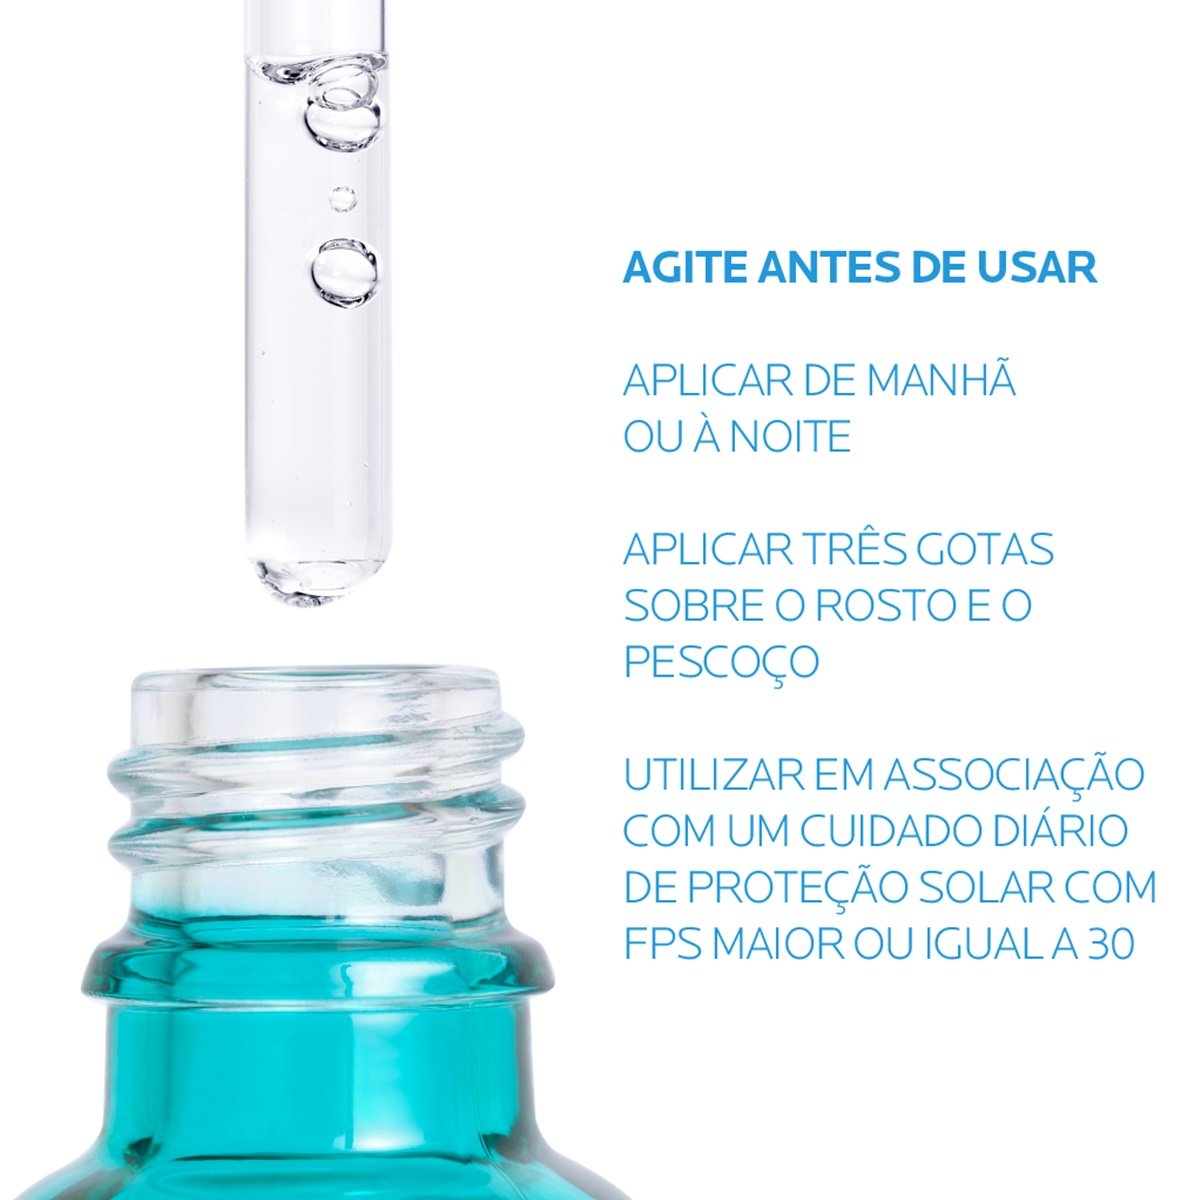 Imagem mostrando o modo de uso do novo Sérum Effaclar Ultra concentrado Antiacne